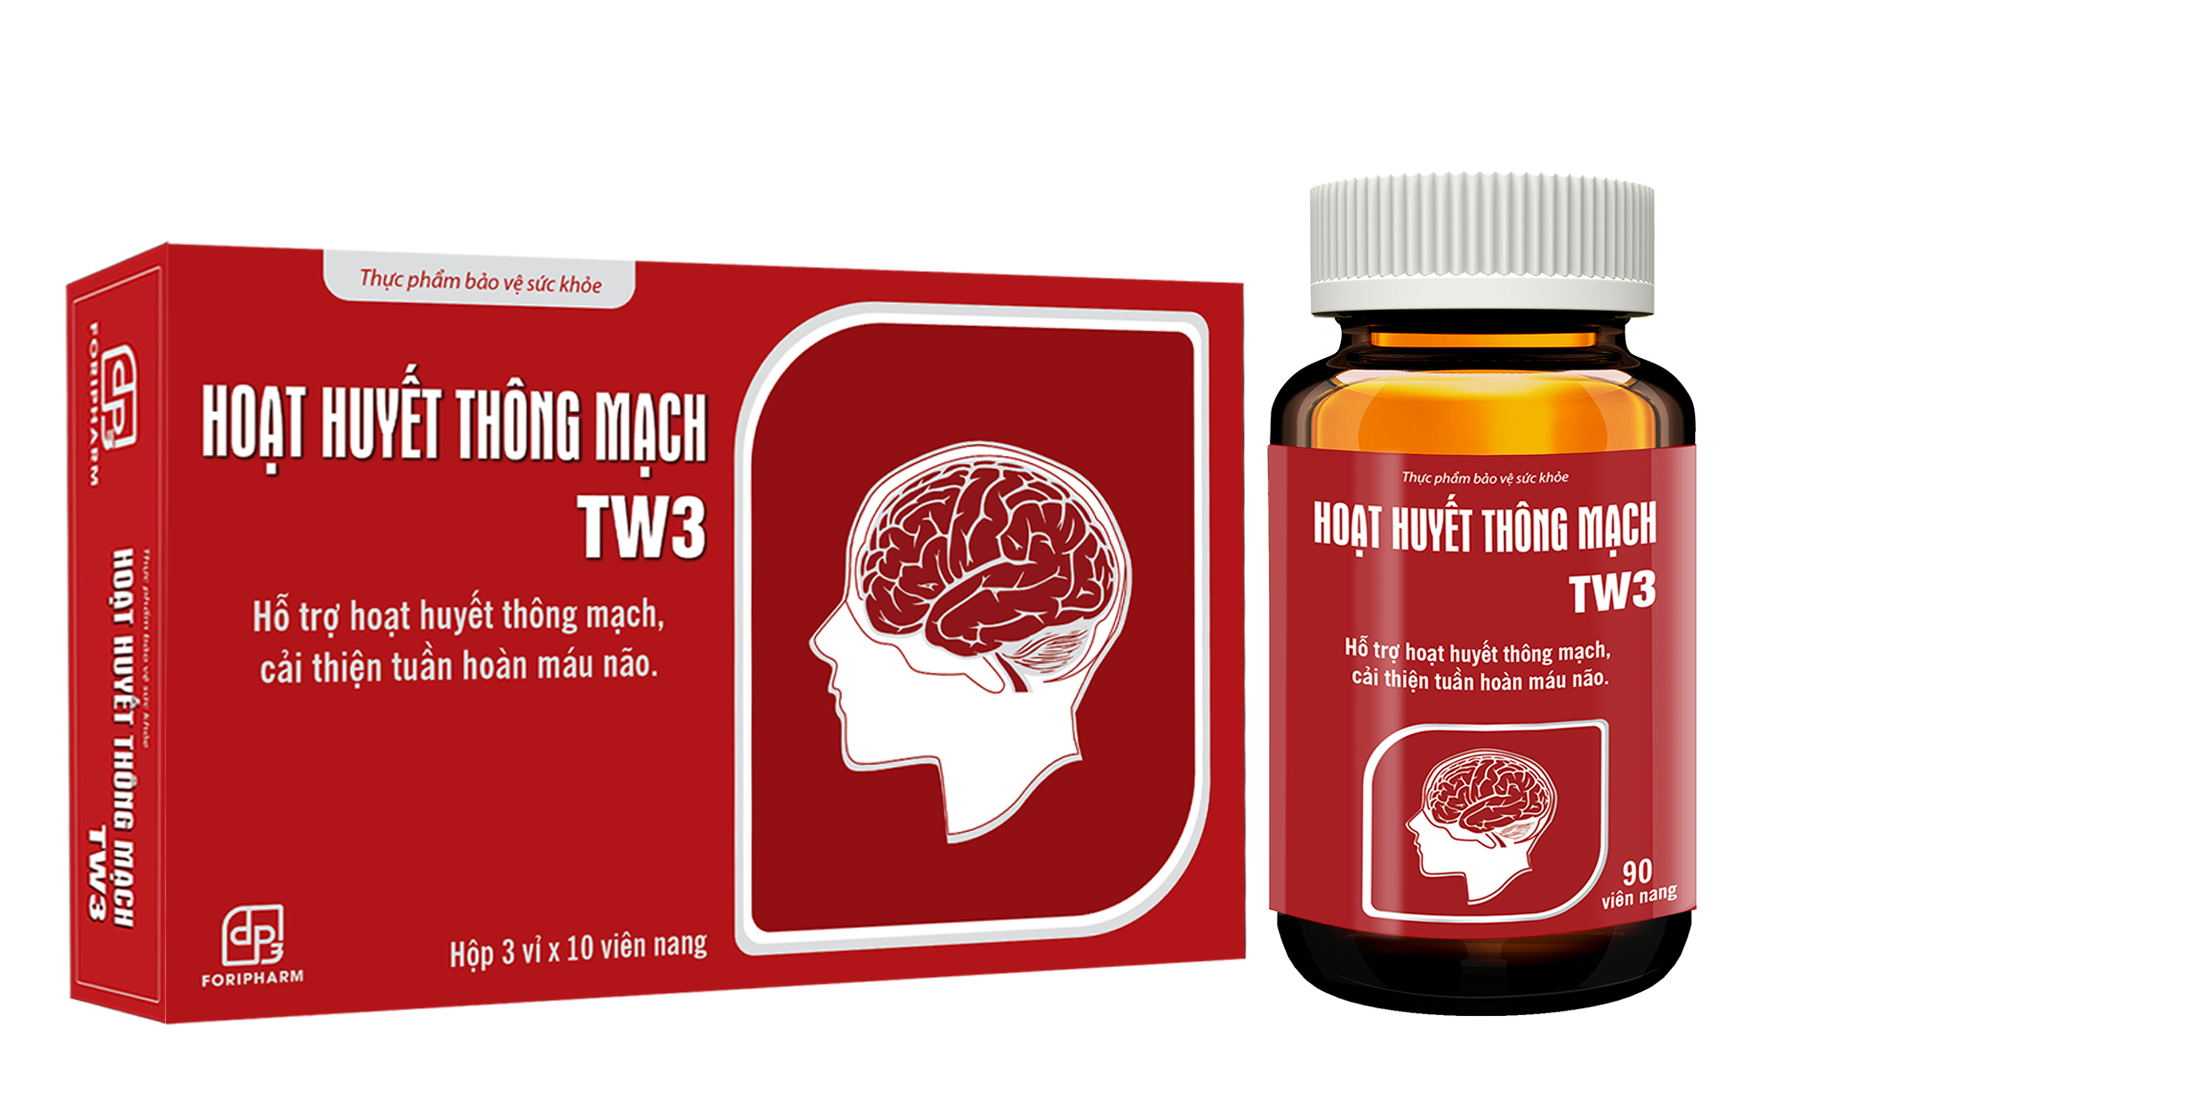 Hoạt huyết thông mạch Tw3 - Giải pháp giúp hỗ trợ cải thiện tuần hoàn máu não an toàn